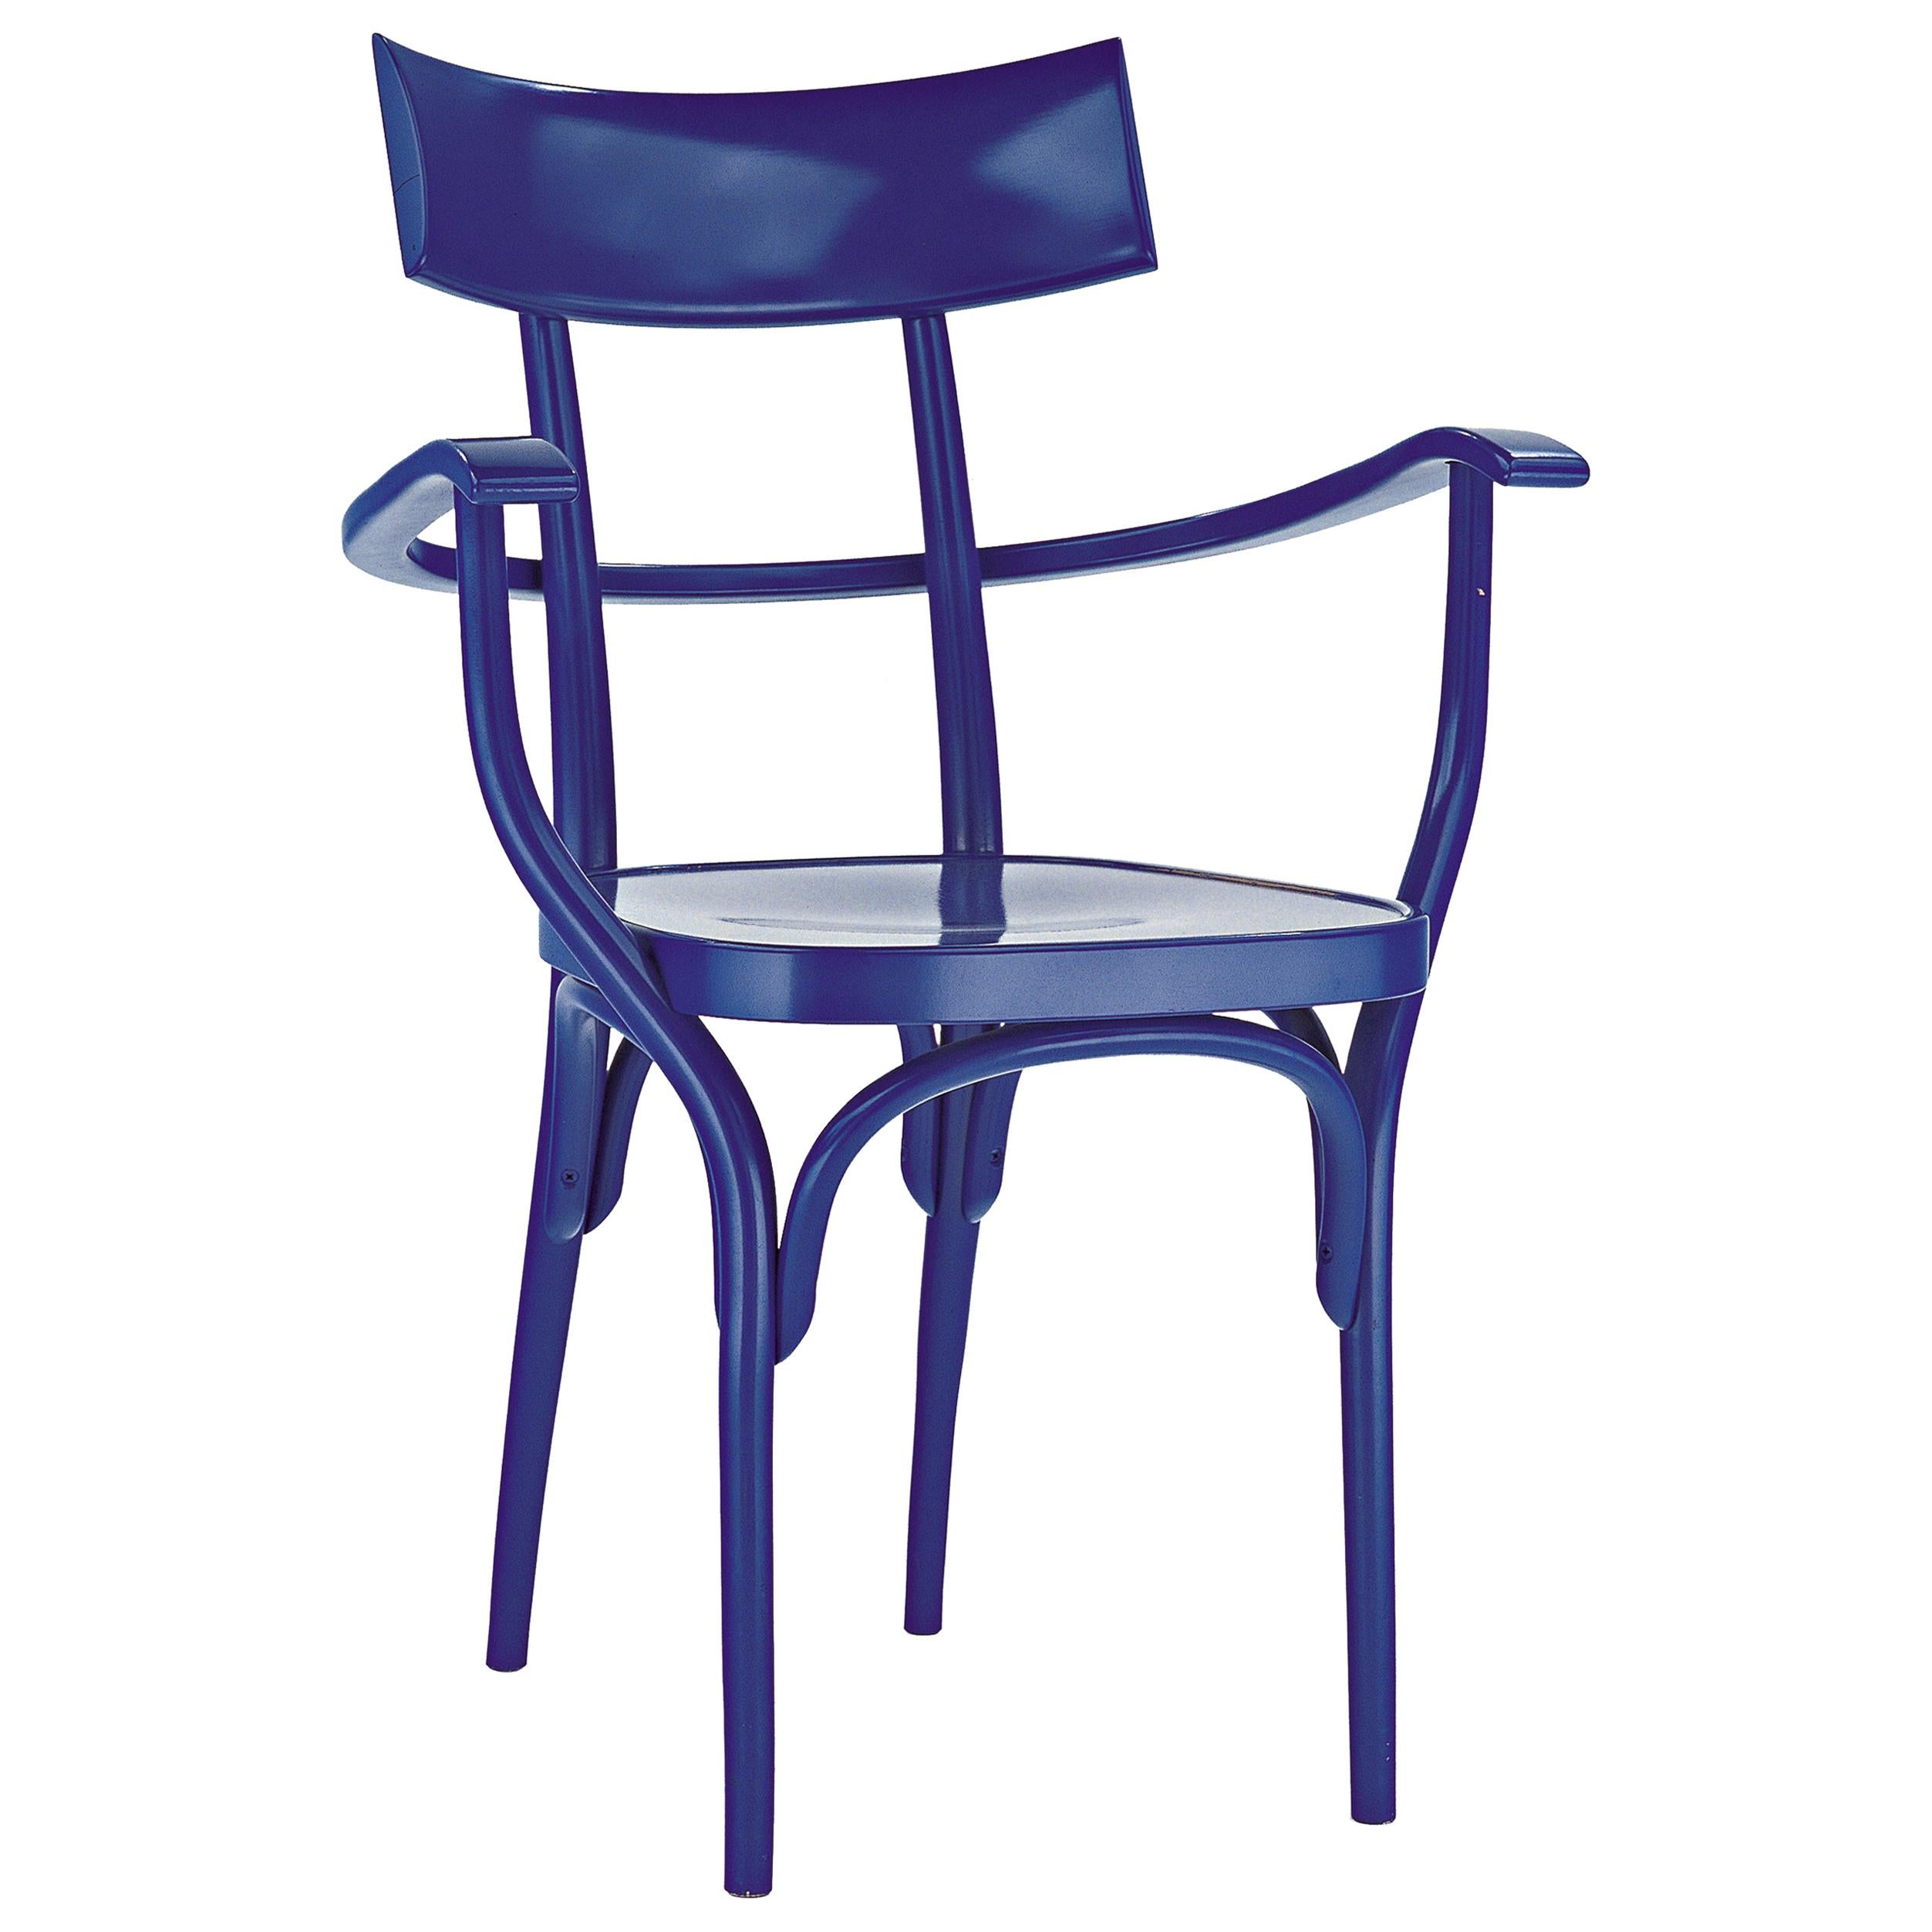 Gebrüder Thonet Vienna GmbH Czech Armchair in Steel Blue with Plywood Seat